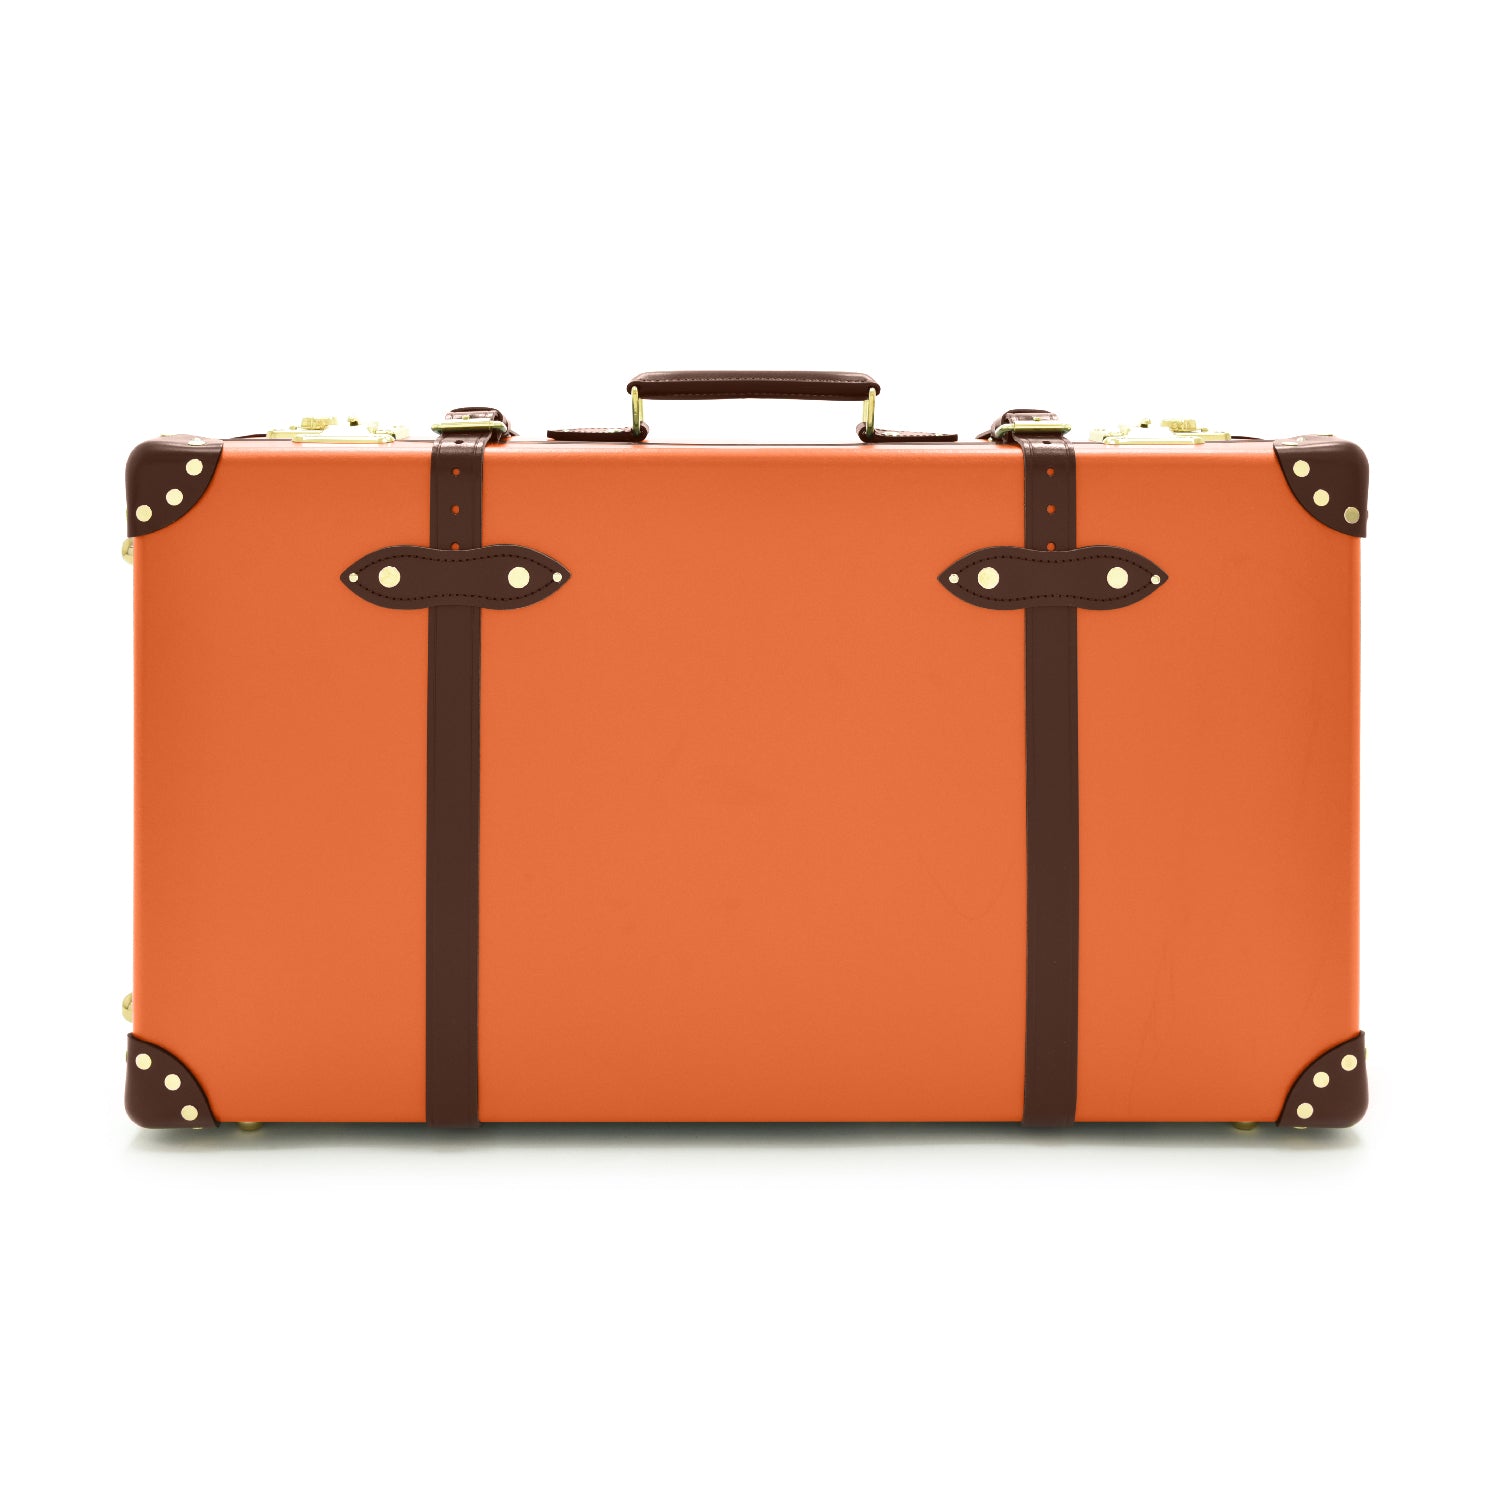 センテナリー · ラージ スーツケース | オレンジ/ブラウン